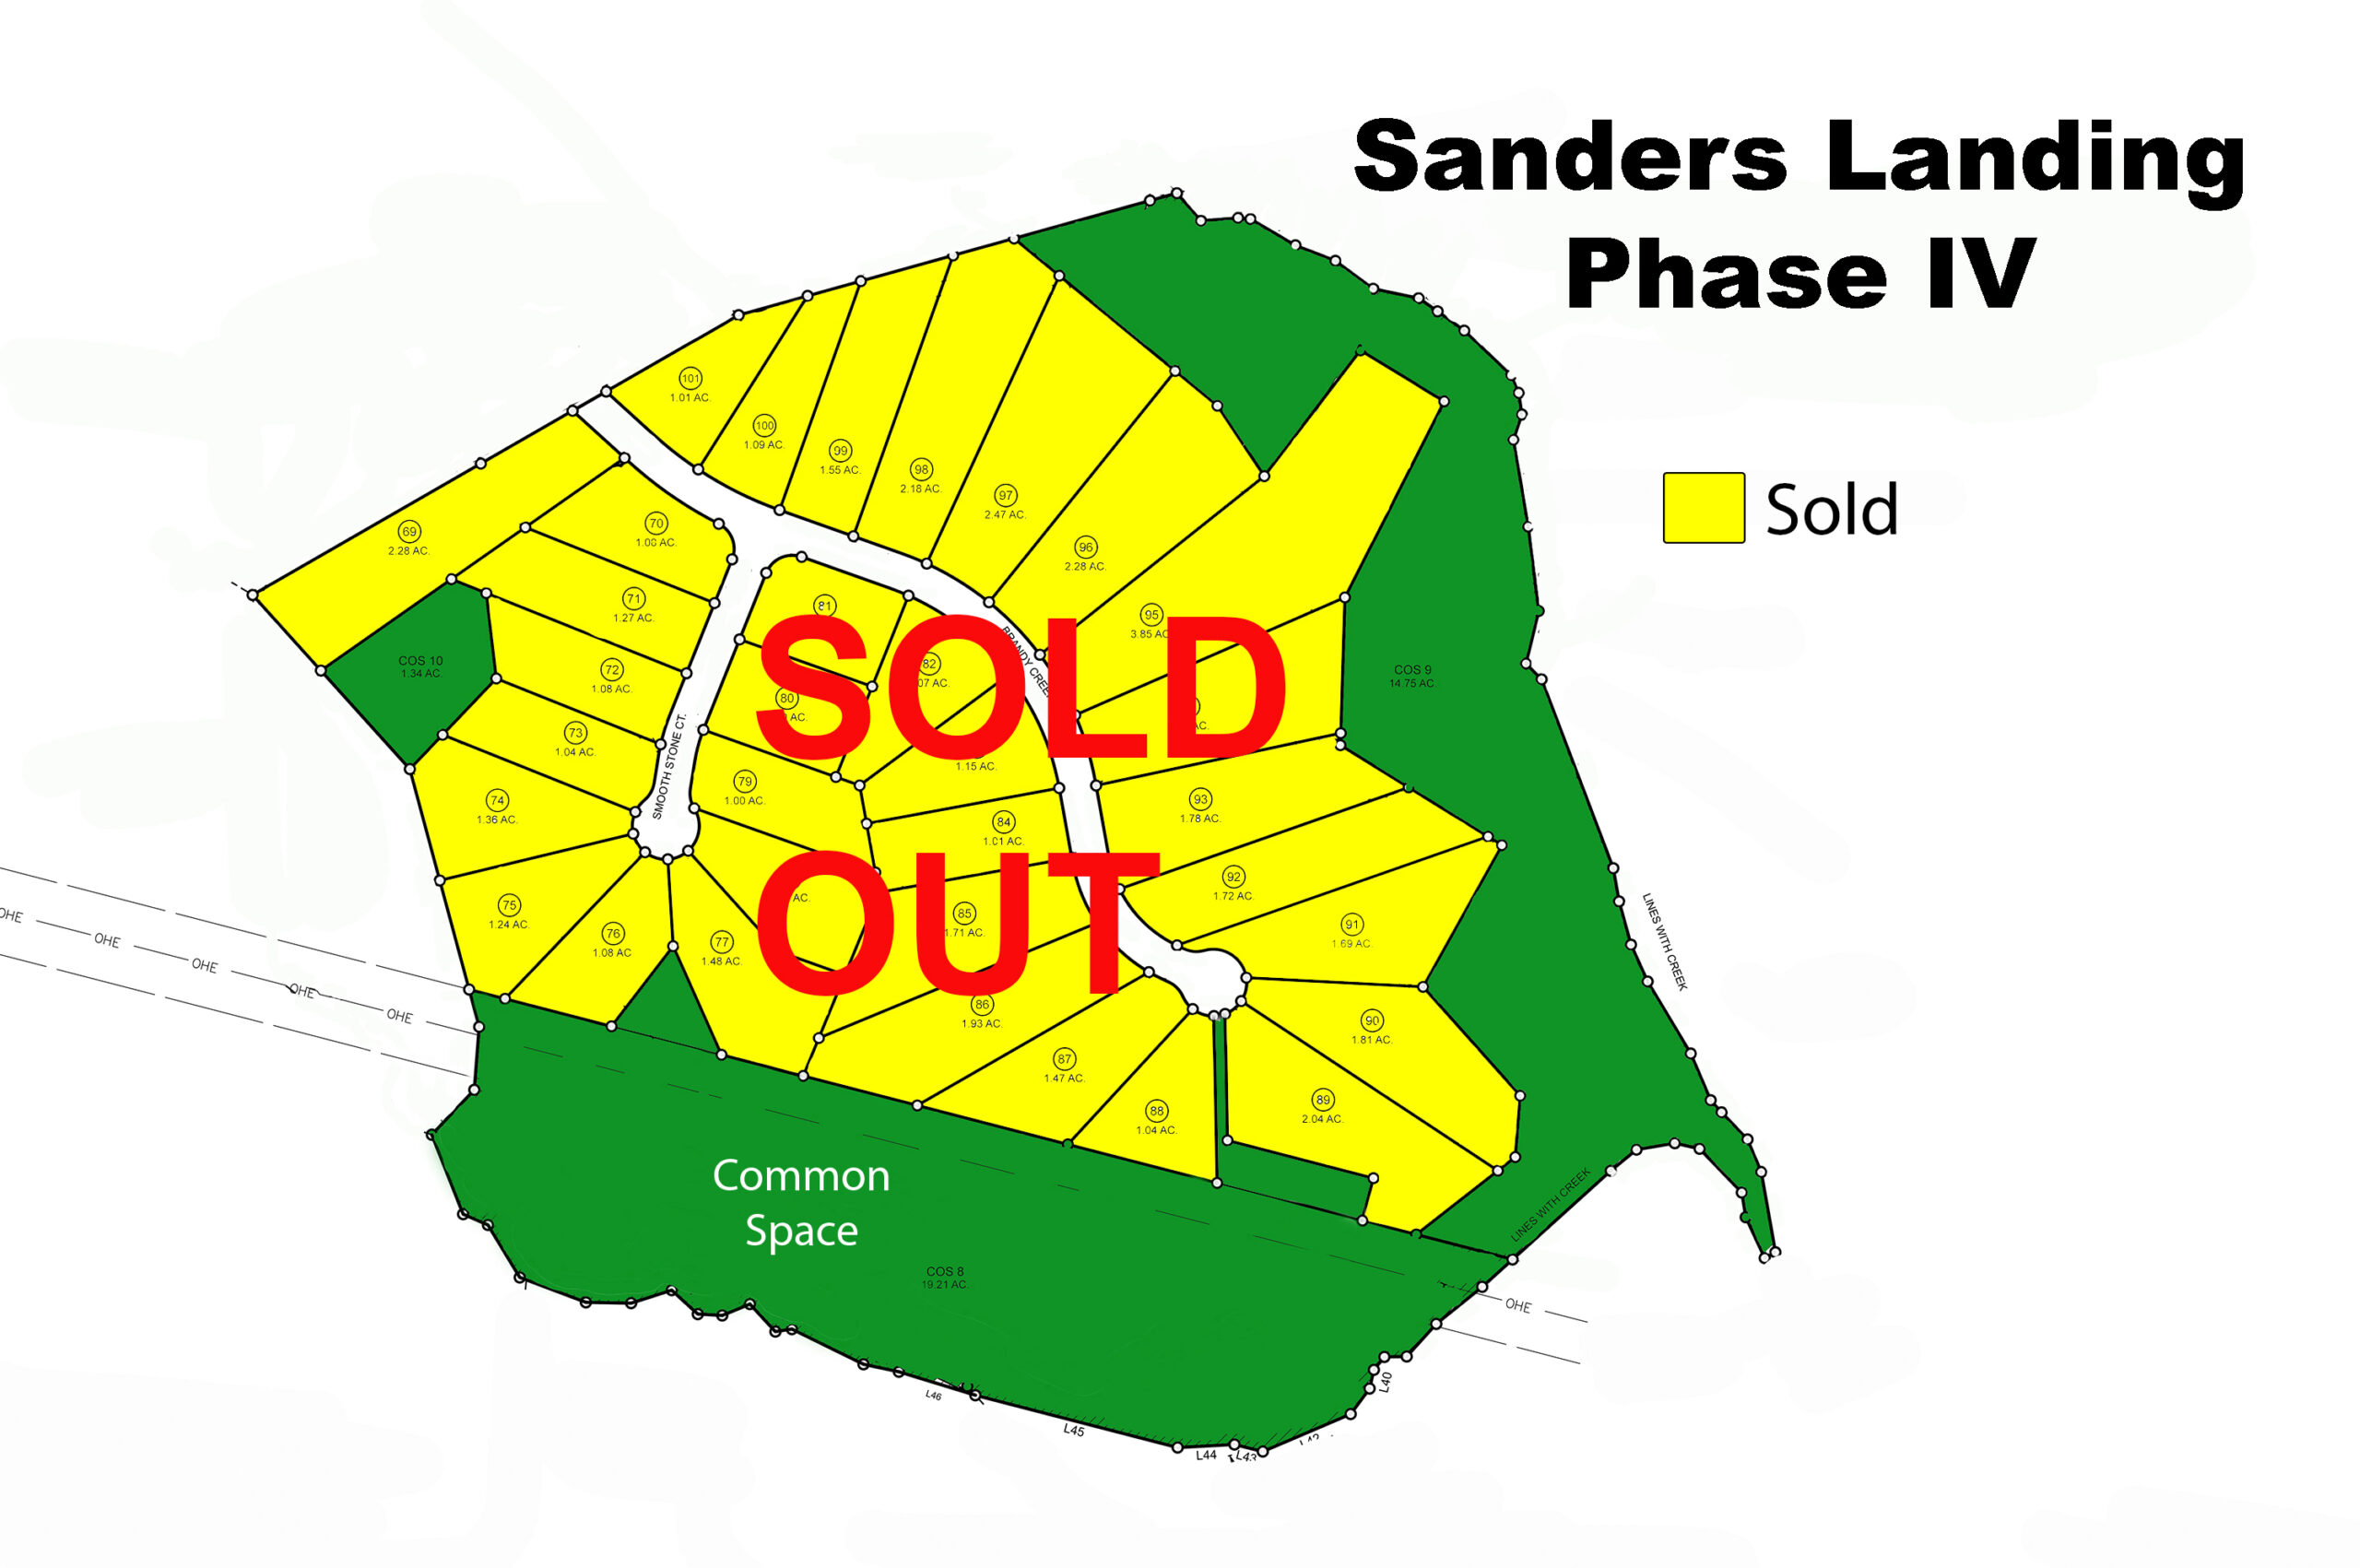 Sanders Ph IV sold